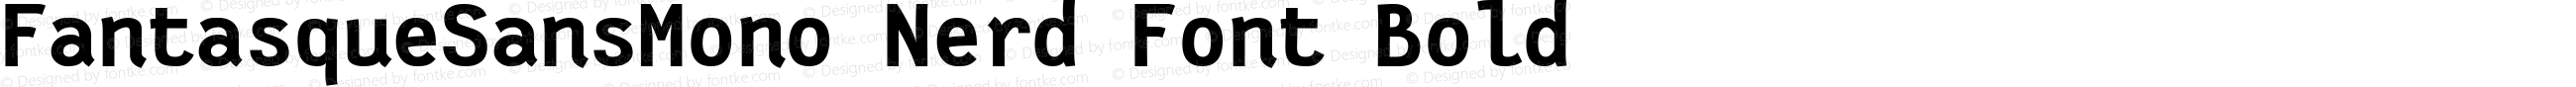 Fantasque Sans Mono Bold Nerd Font Plus Font Linux